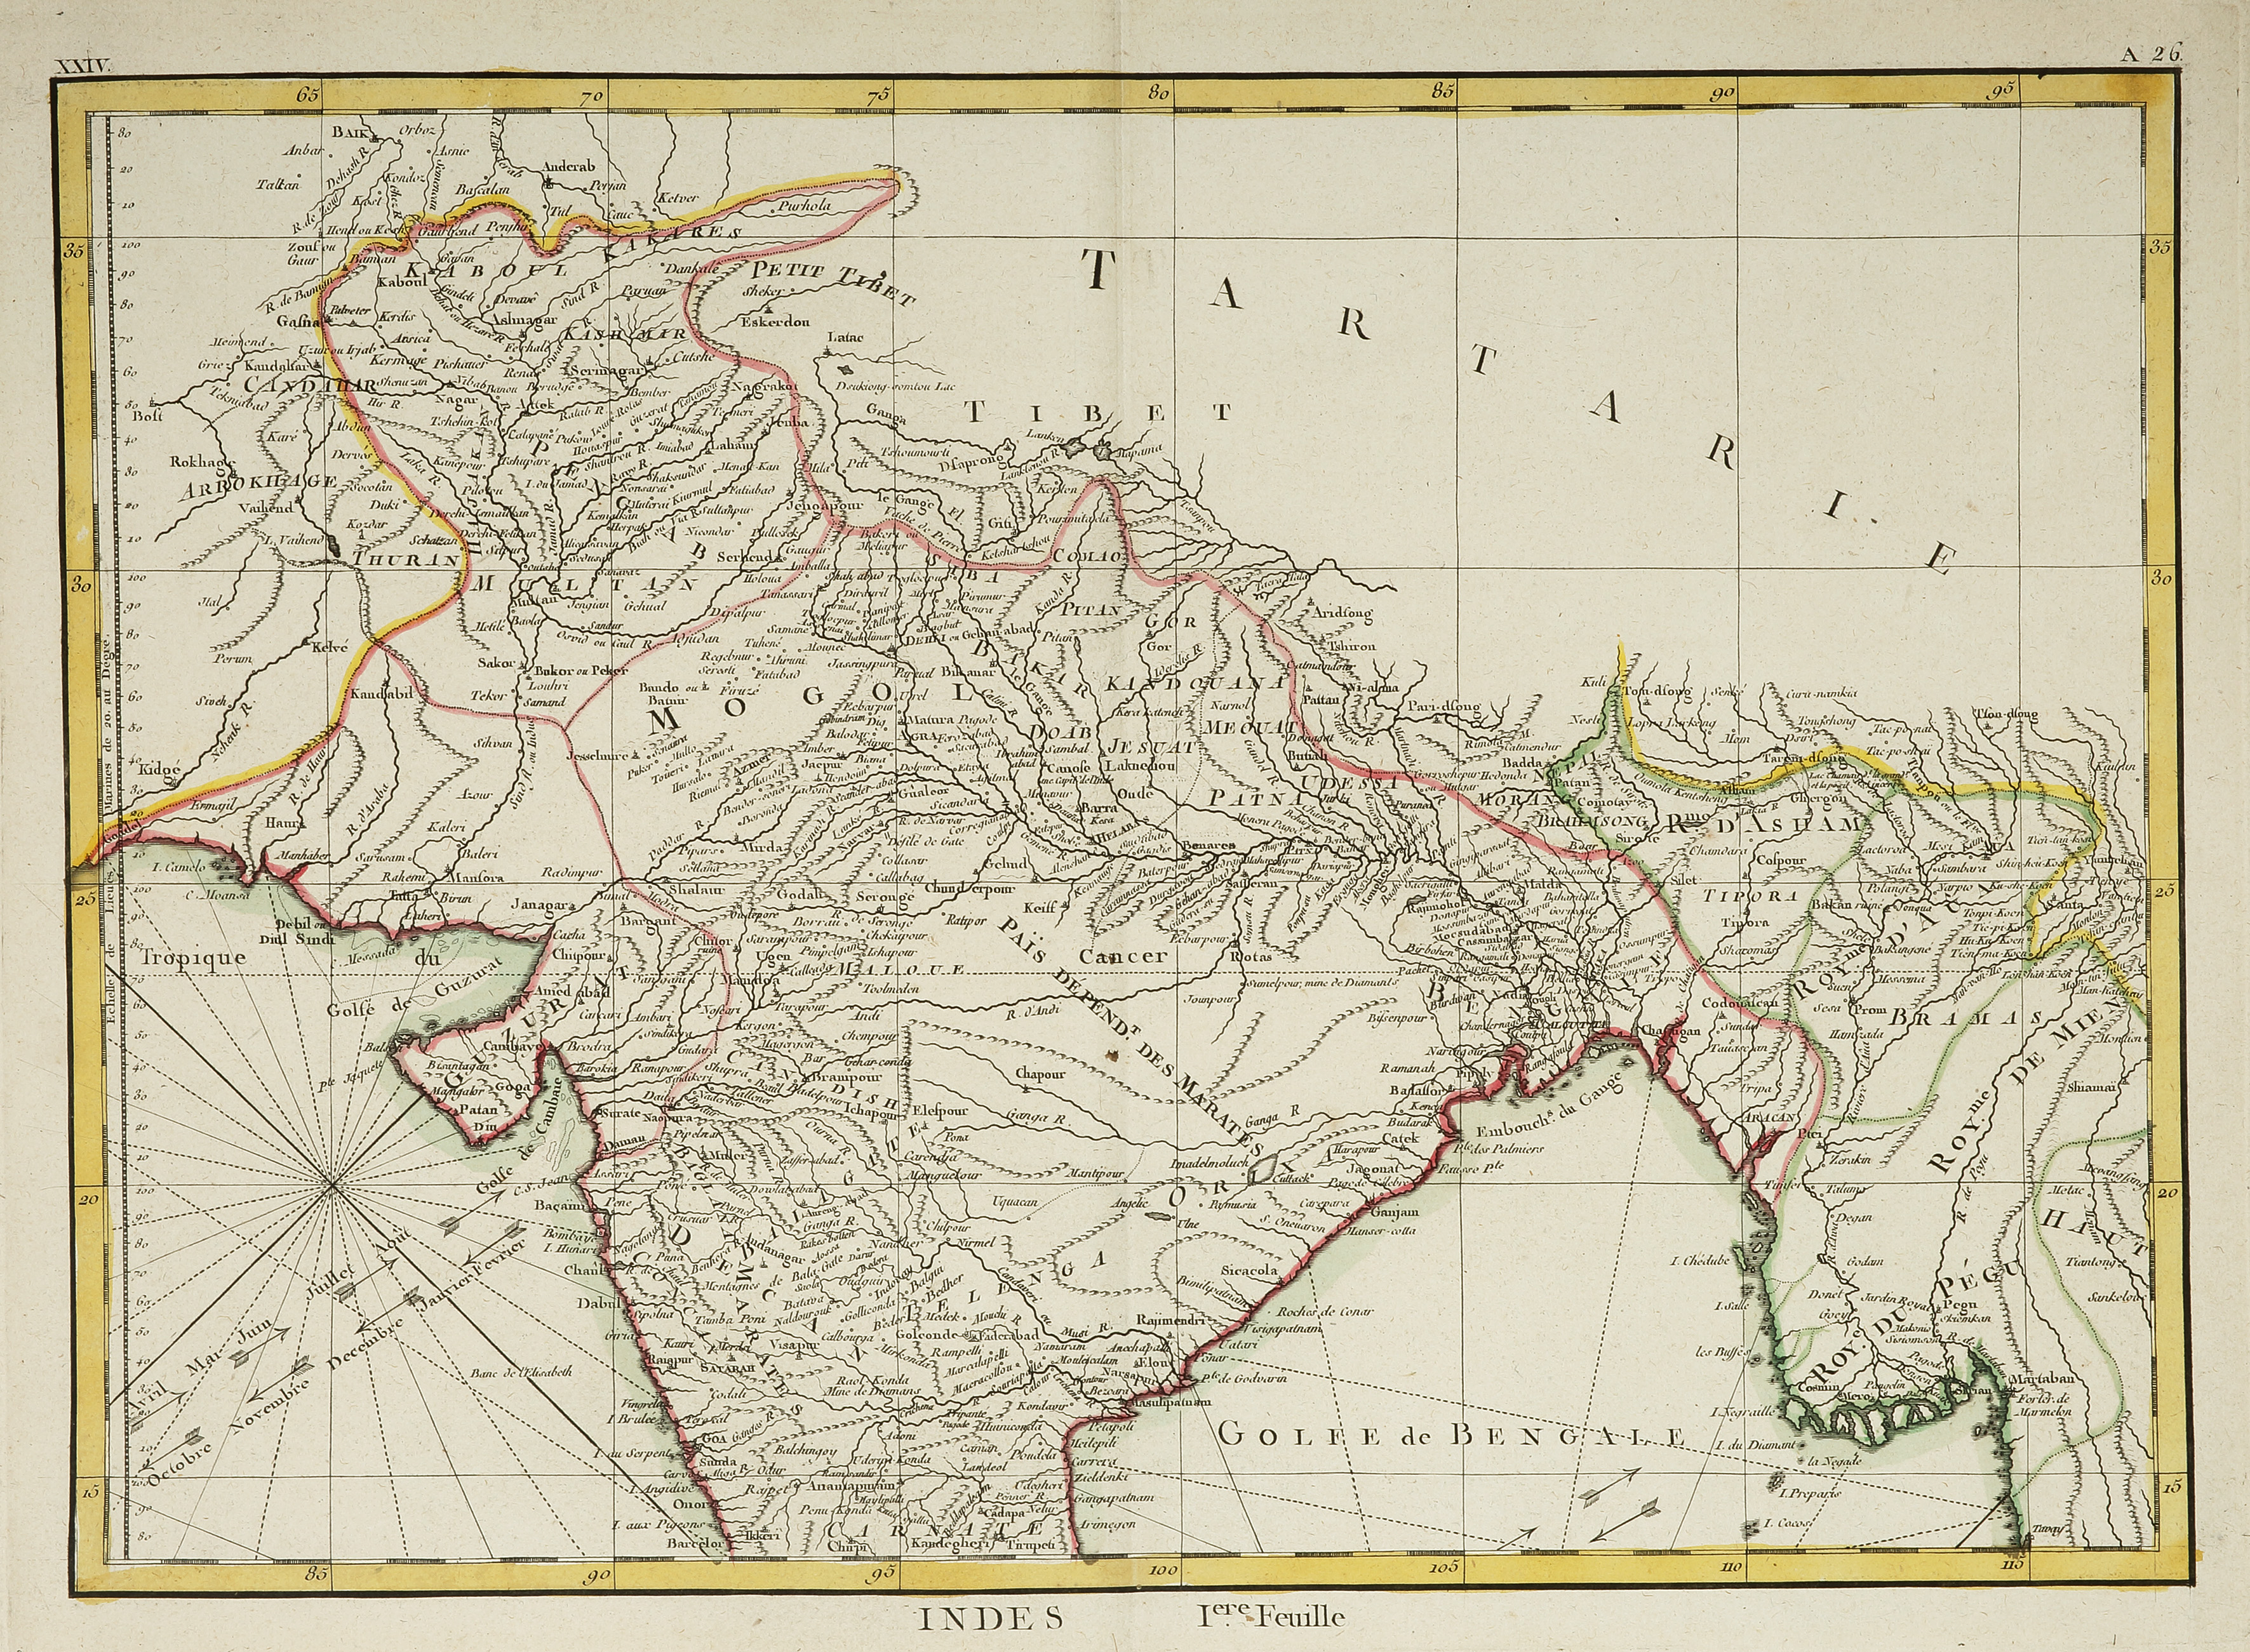 Carte Hydro-Geo-Graphique Des Indes Orientales en deca et au dela du Ganges avec leur Archipel. [4 sheets] Iere., IIe., IIIe., IVe. Feuile - Antique Print from 1771